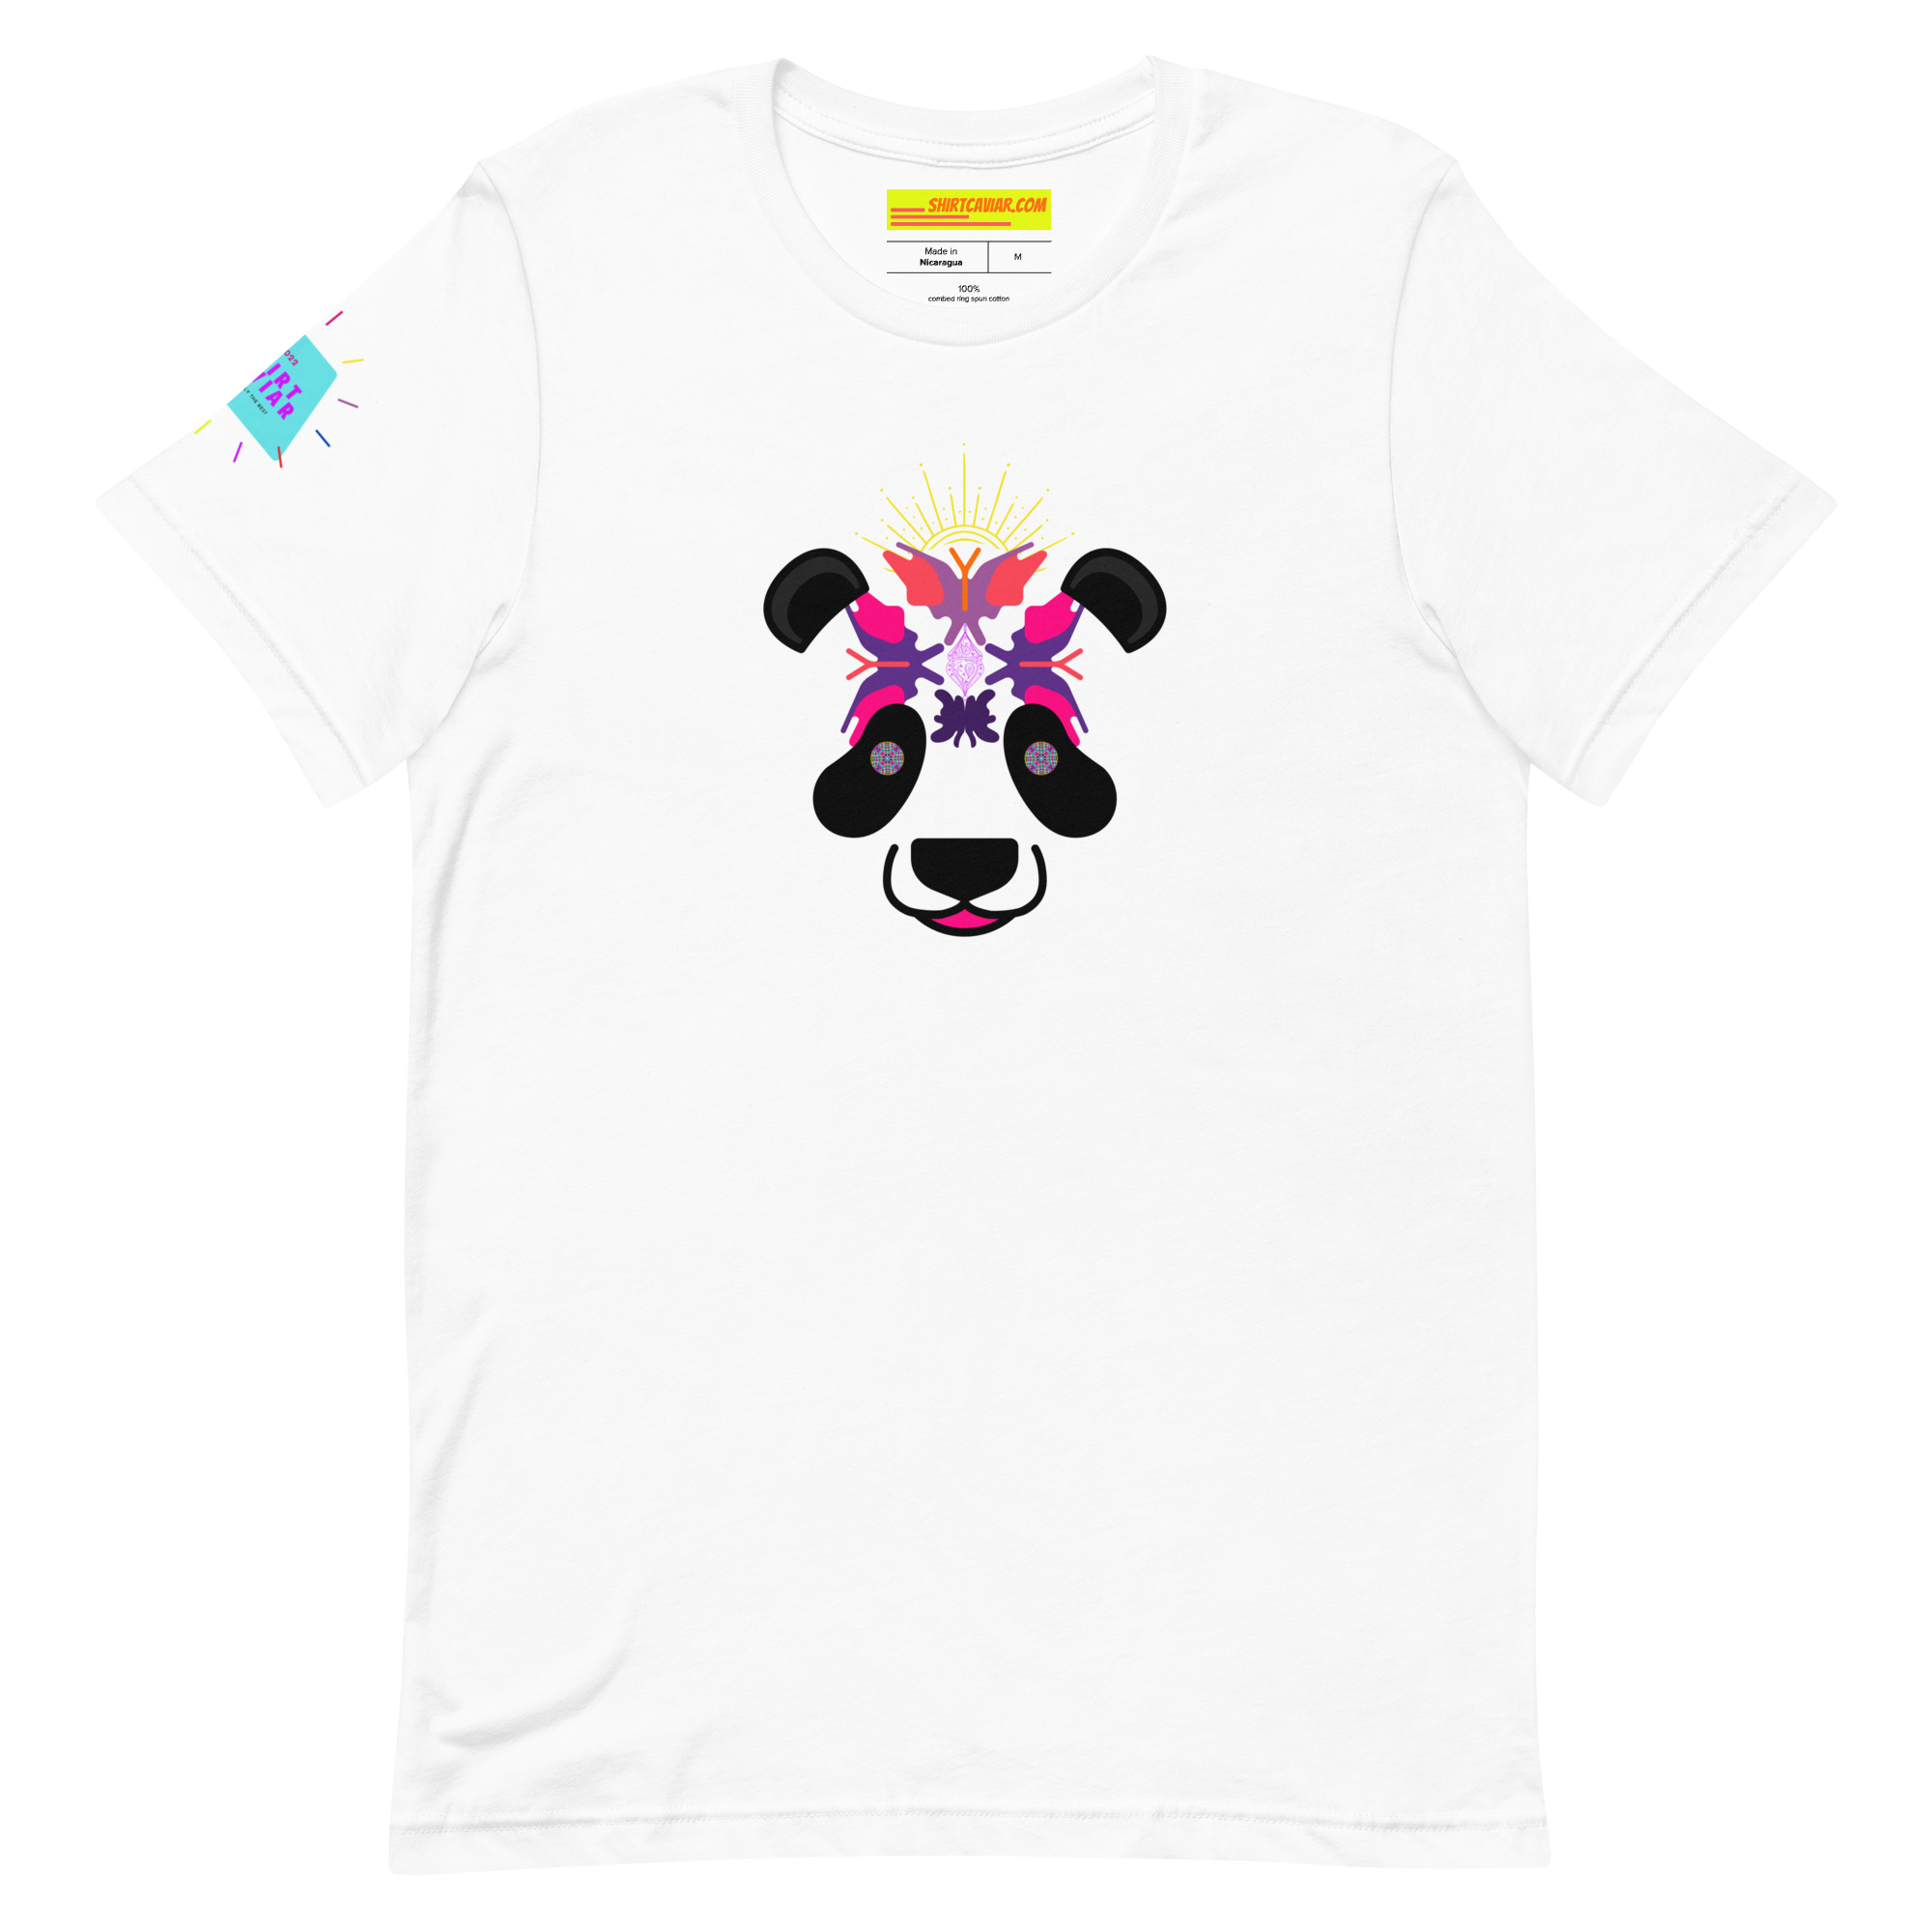 Rorschach Panda Unisex t-shirt